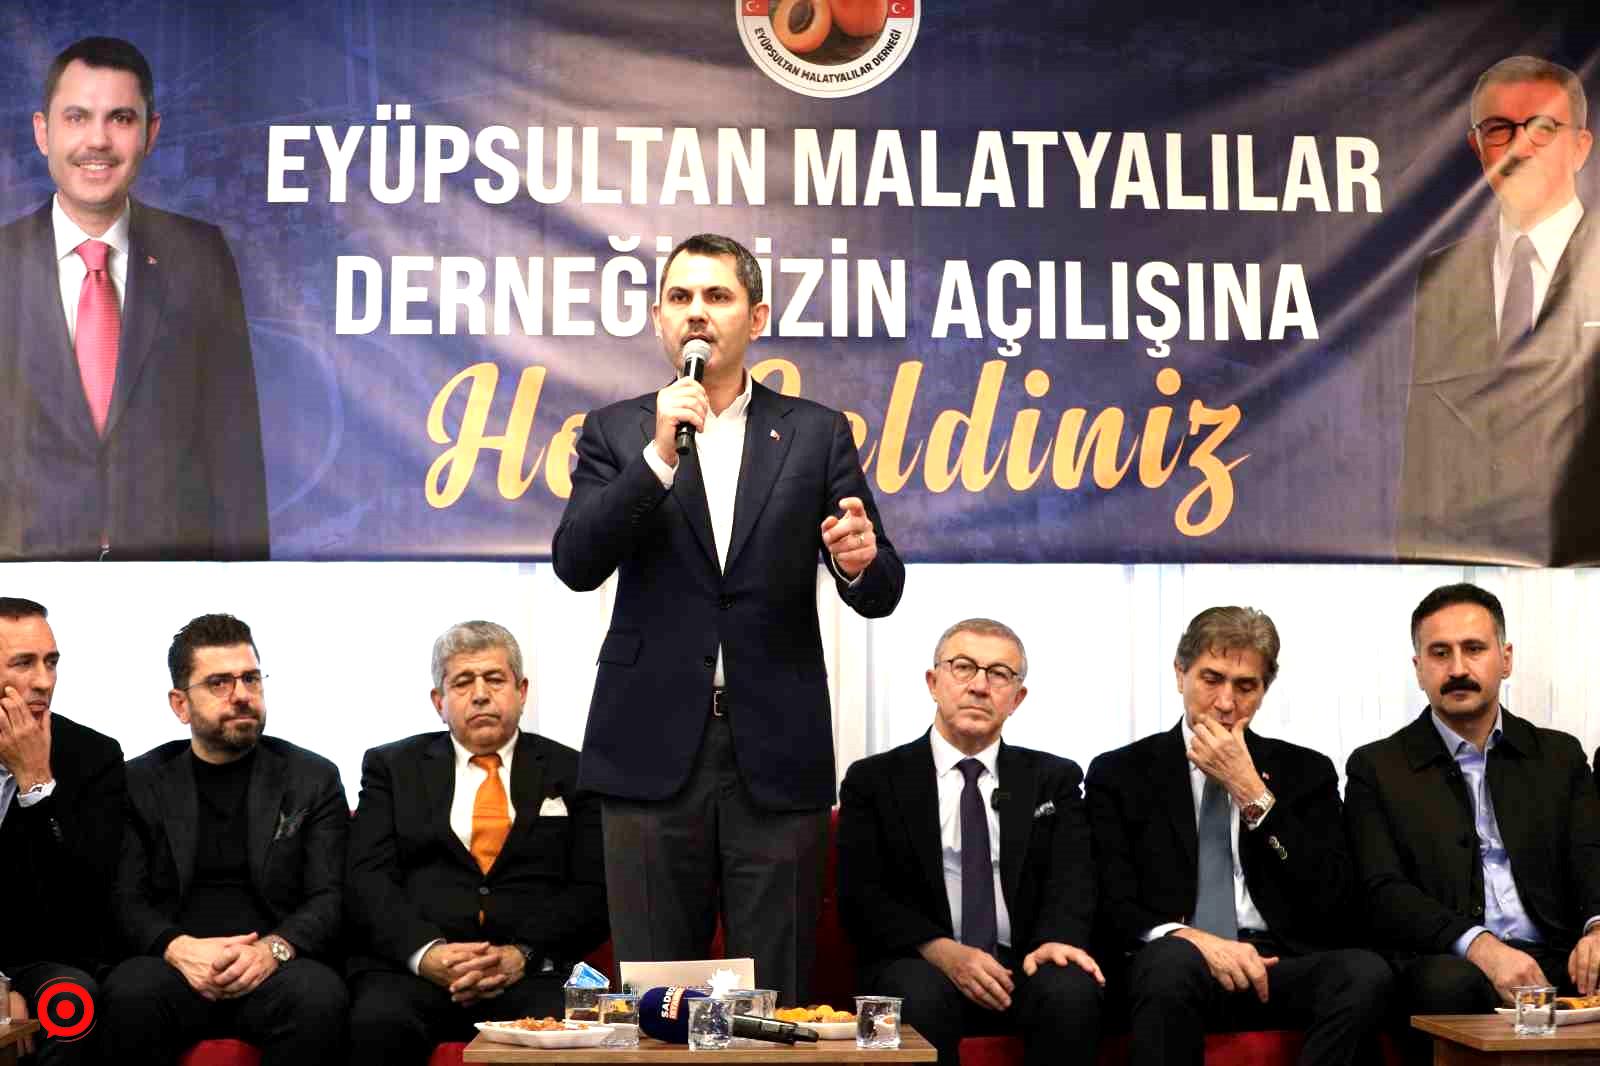 Murat Kurum, Eyüpsultan Malatyalılar Derneğinin açılışına katıldı: "Devletimizle milletimiz için 3 ayda 180 bin konutun inşasını başlattık”